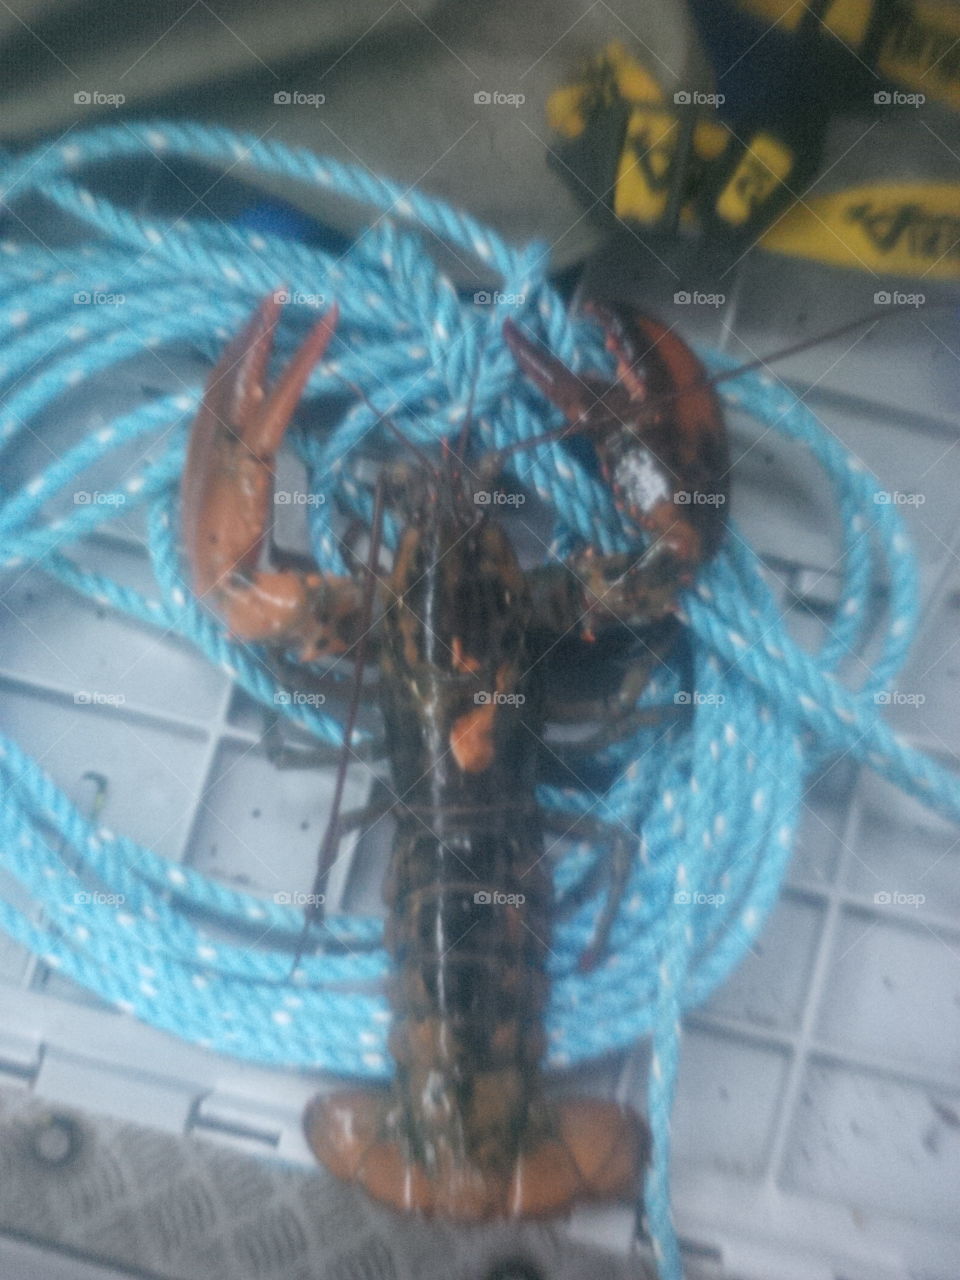 Funky looking lobster